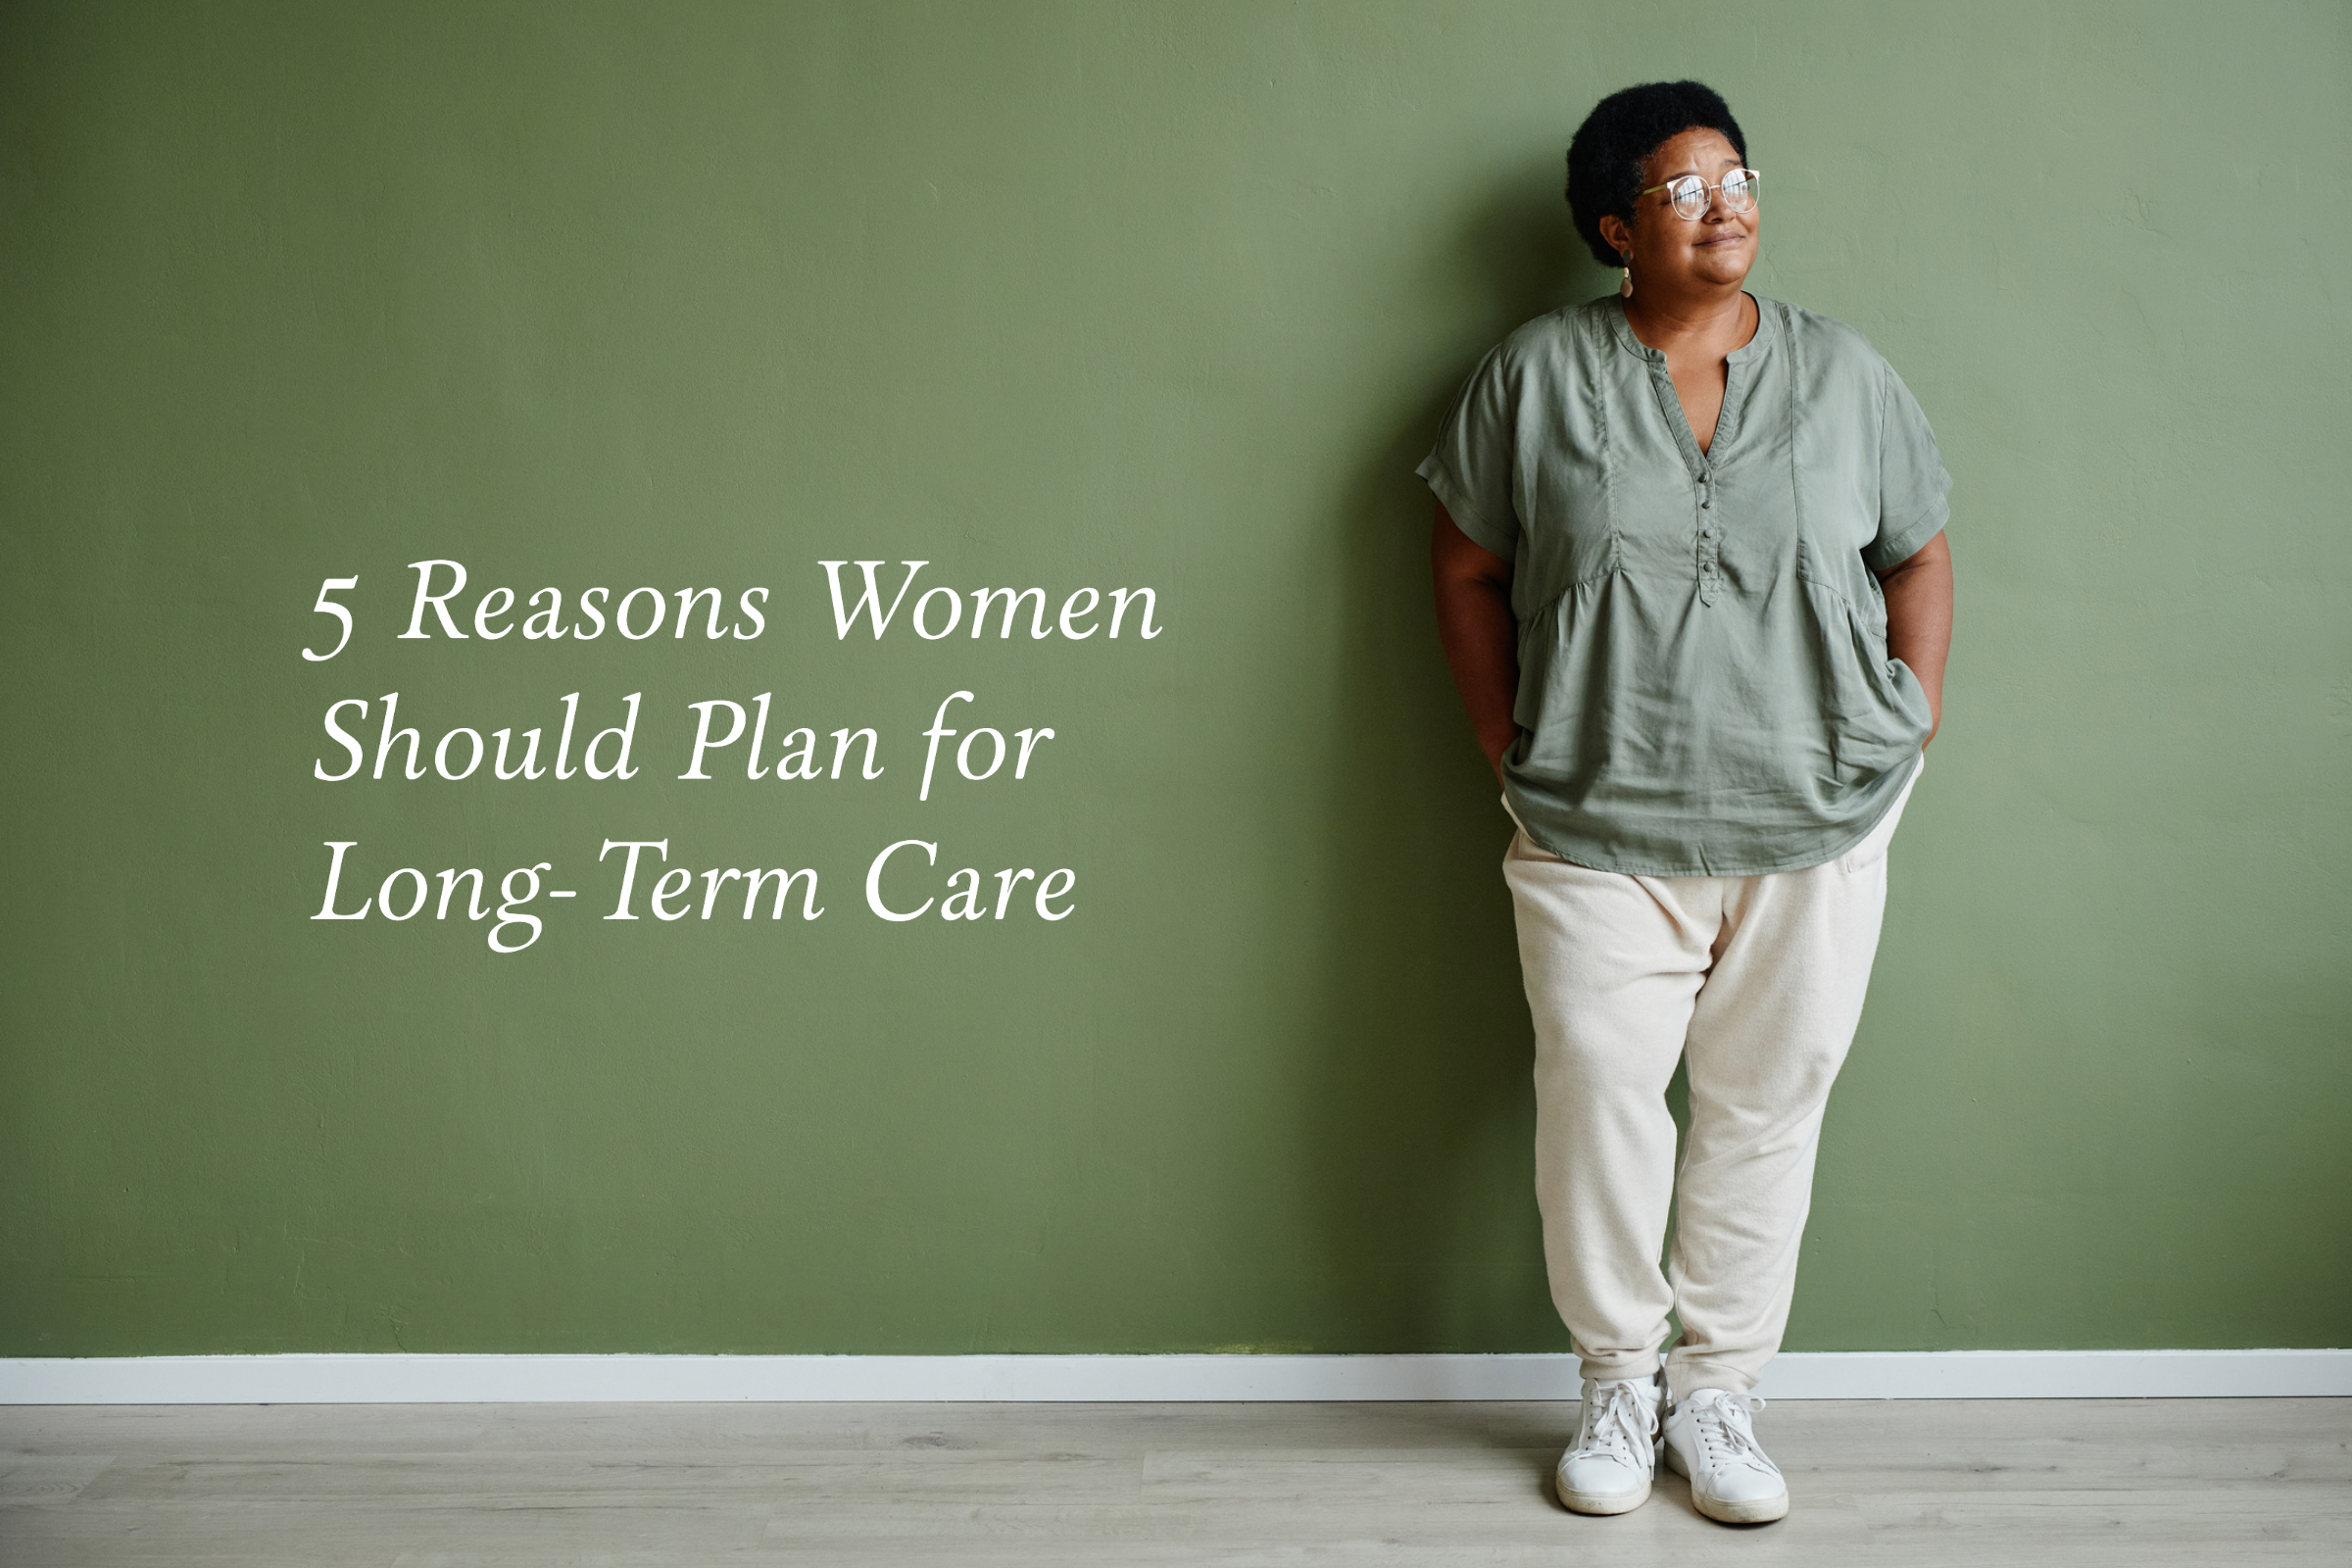 012-2022 FI 01-5 Reasons Women Should Plan for Long-Term Care-1 (1)